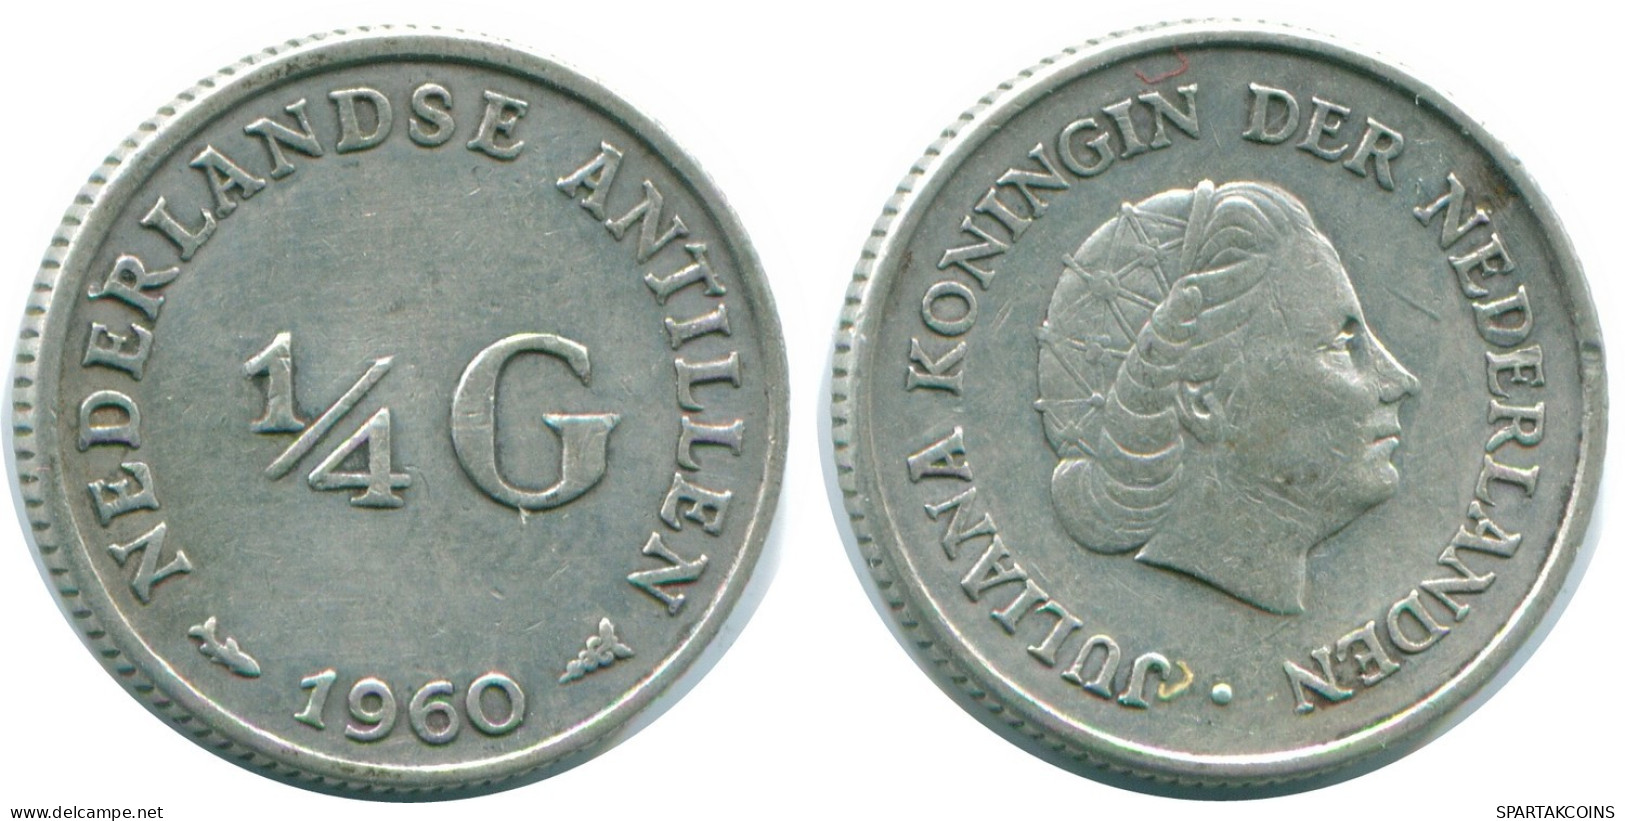 1/4 GULDEN 1960 NIEDERLÄNDISCHE ANTILLEN SILBER Koloniale Münze #NL11054.4.D.A - Antillas Neerlandesas